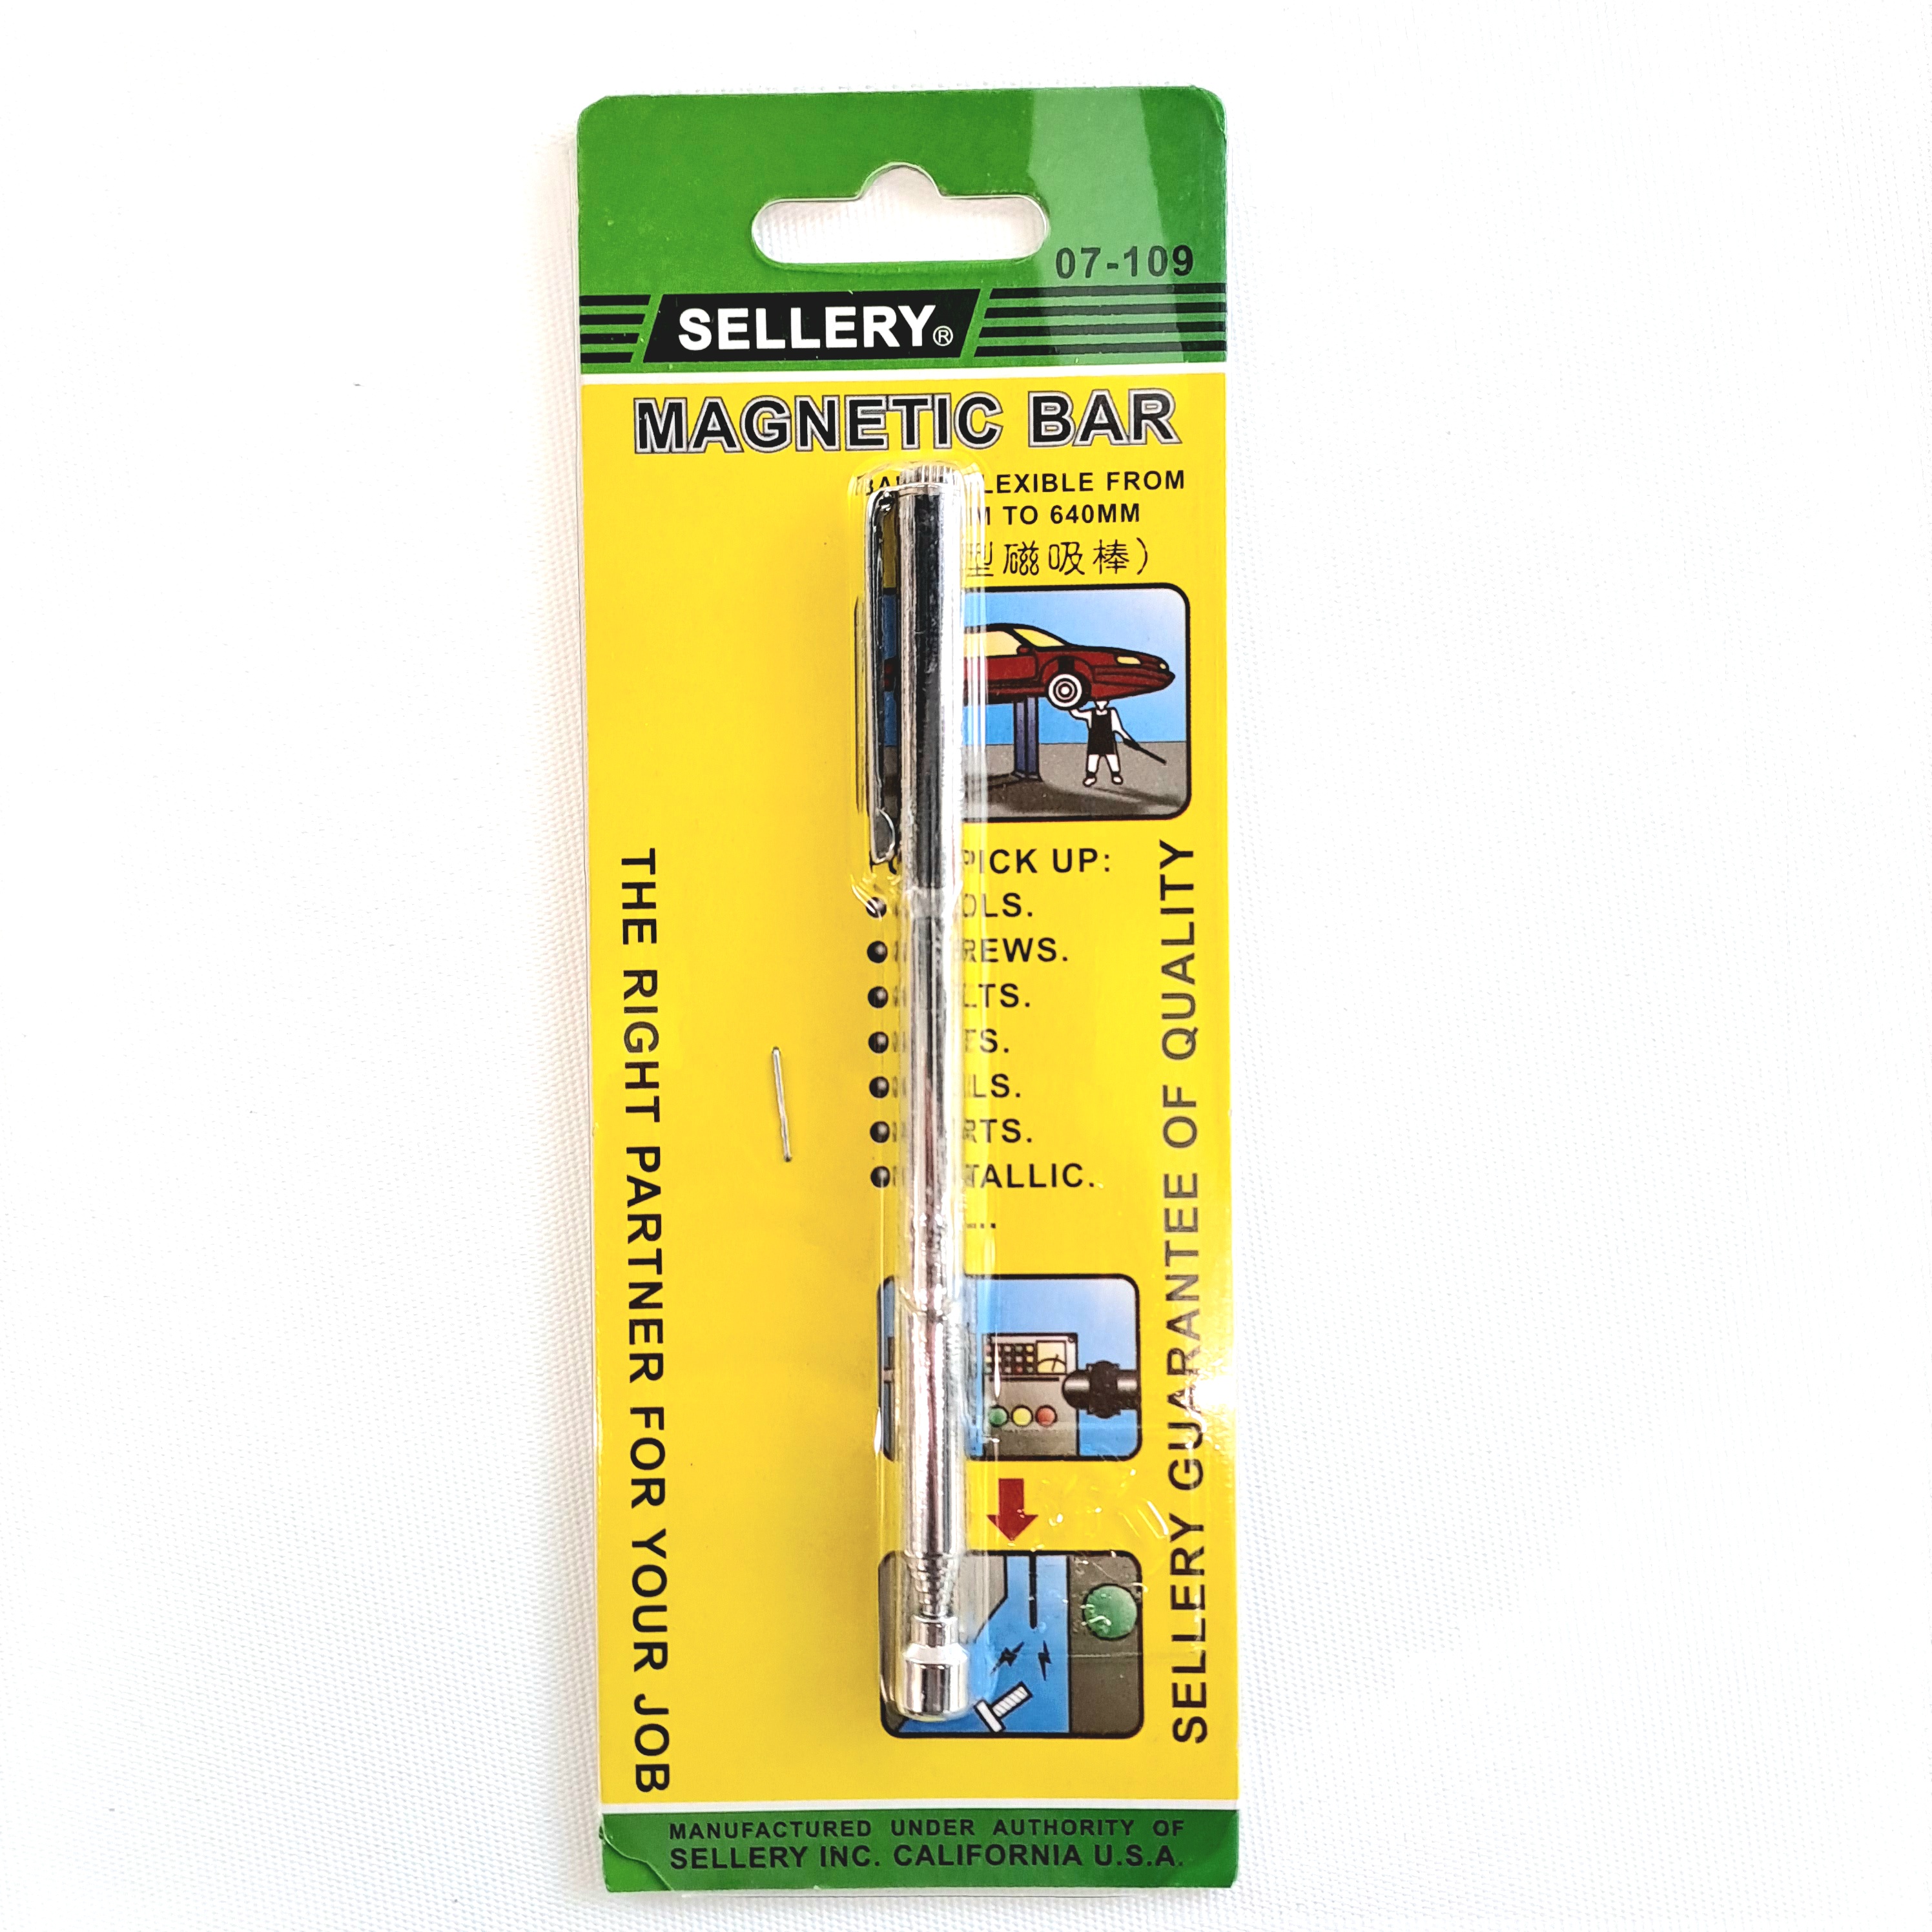 Sellery 07-109 Magnetic Bar Length:125-640mm